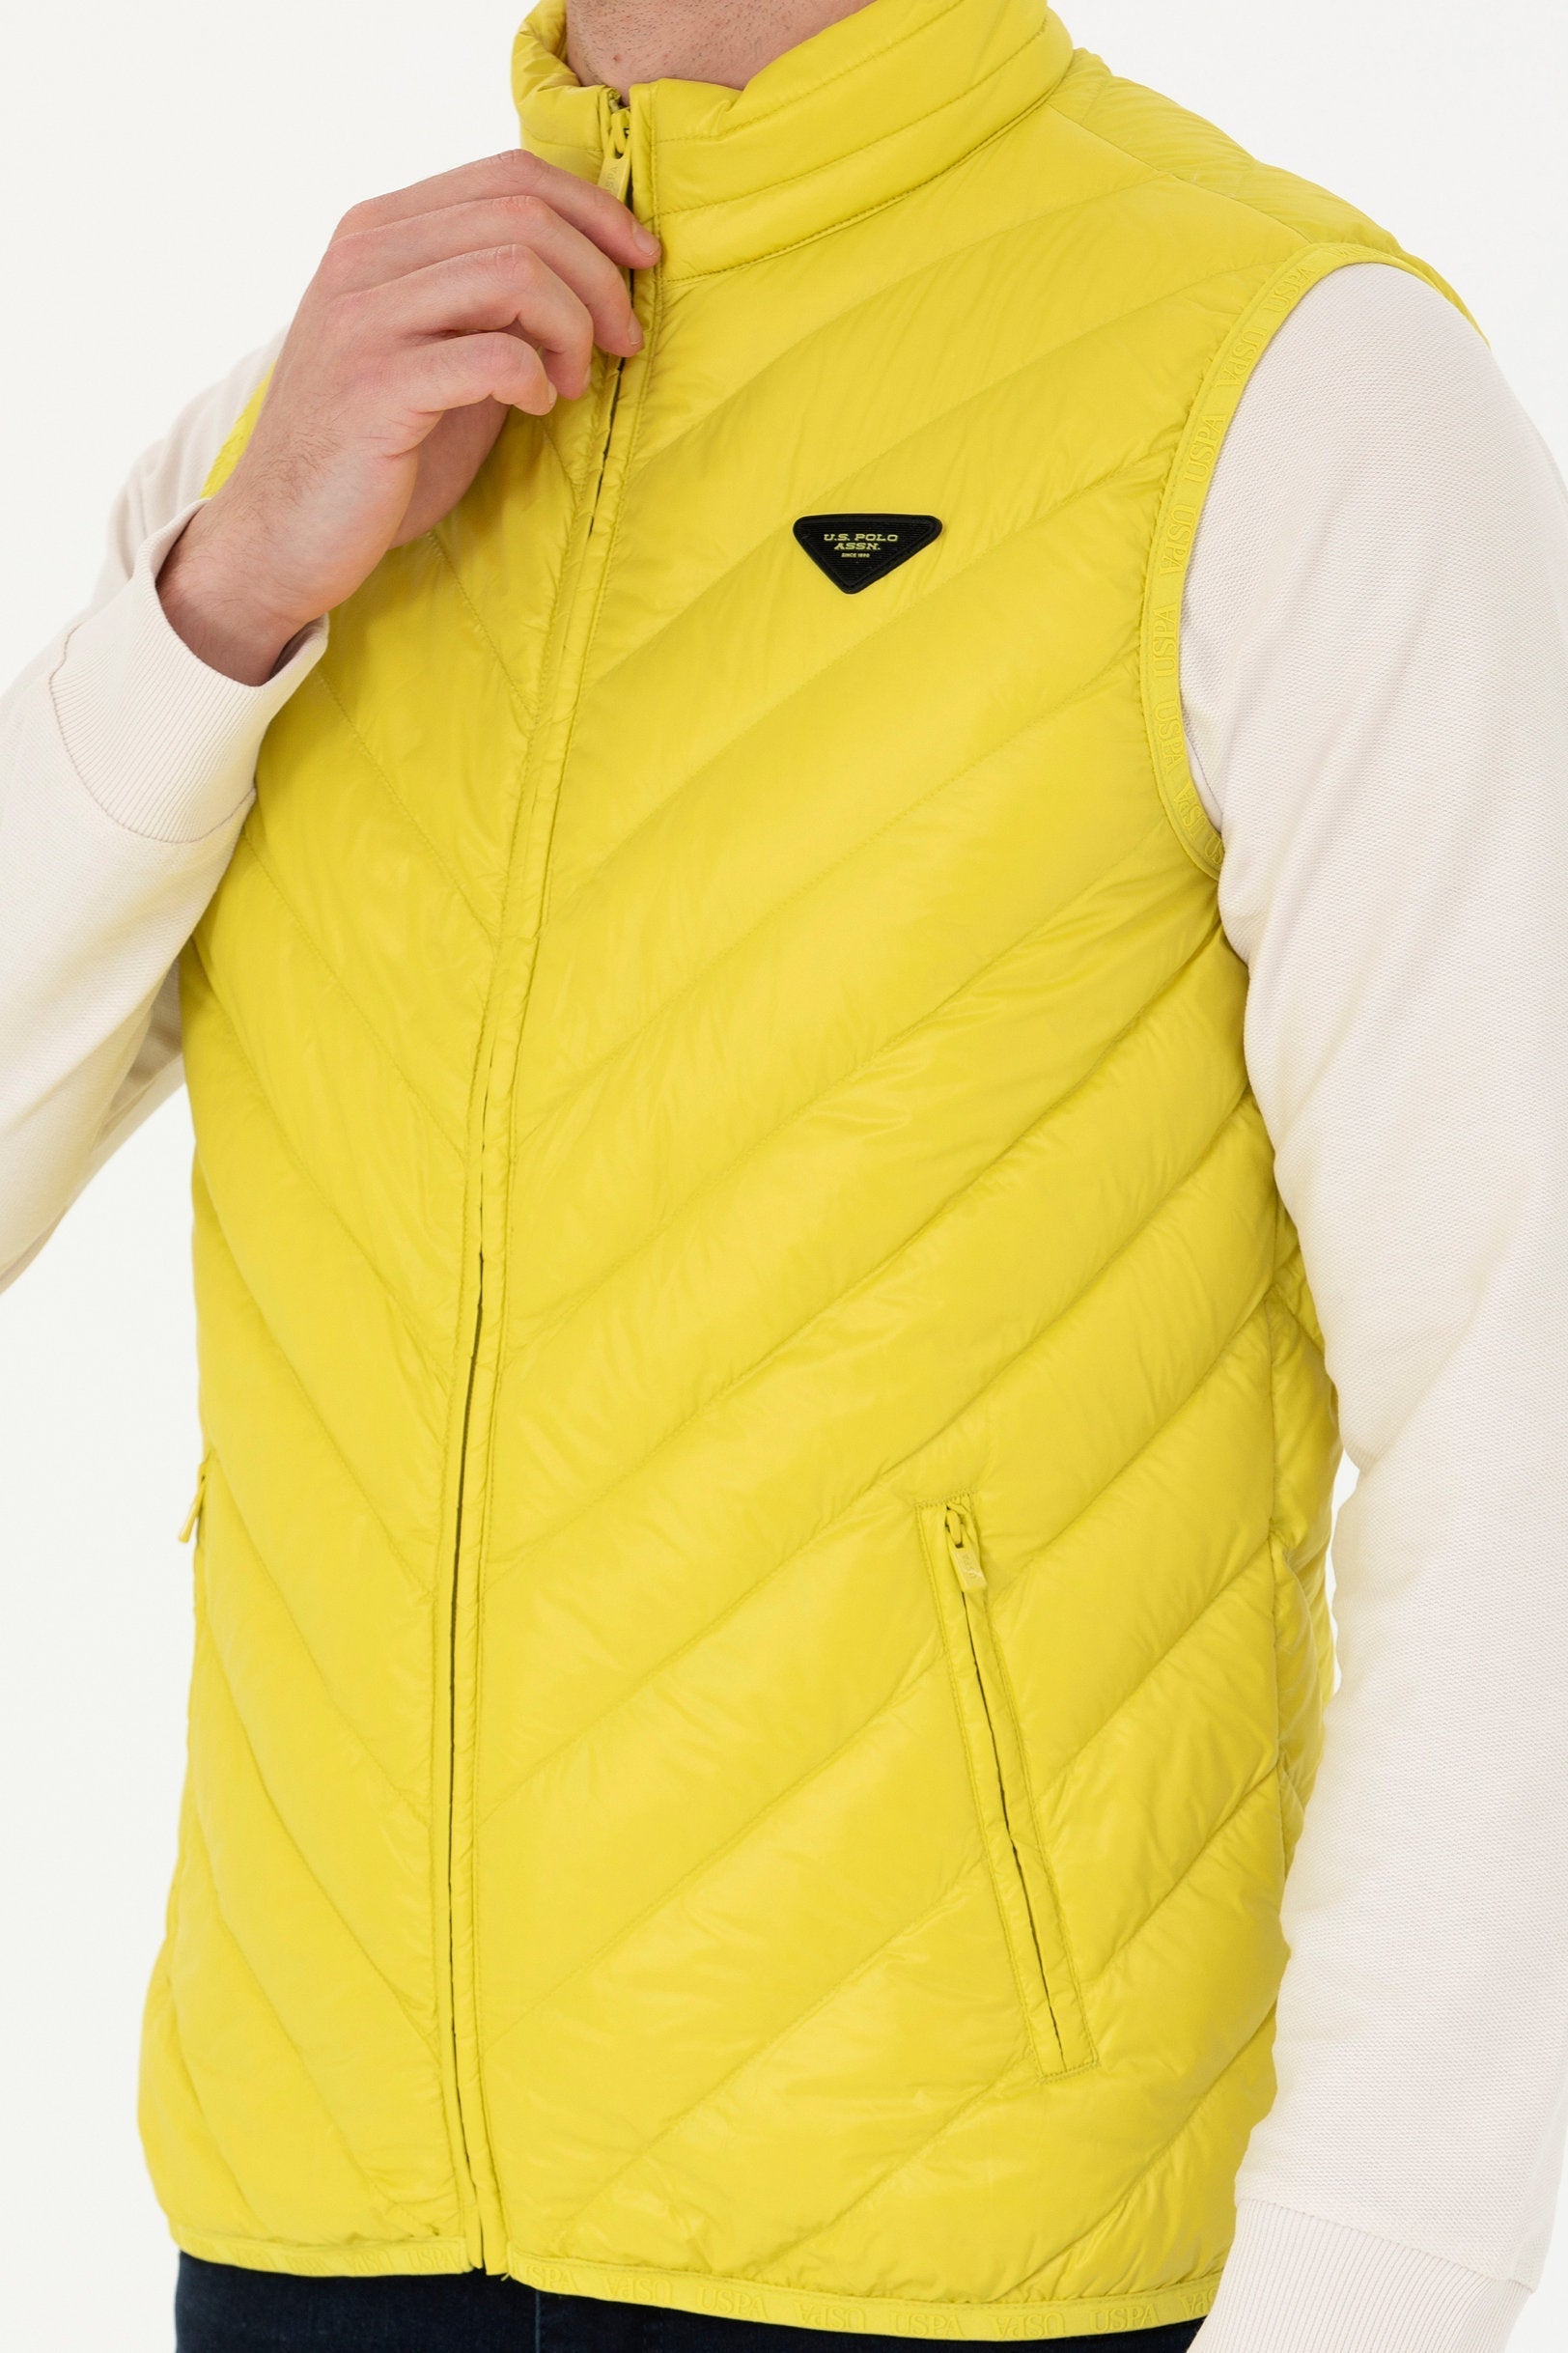 Yellow Vest Jacket_G081SZ0100 1631409_VR087_05